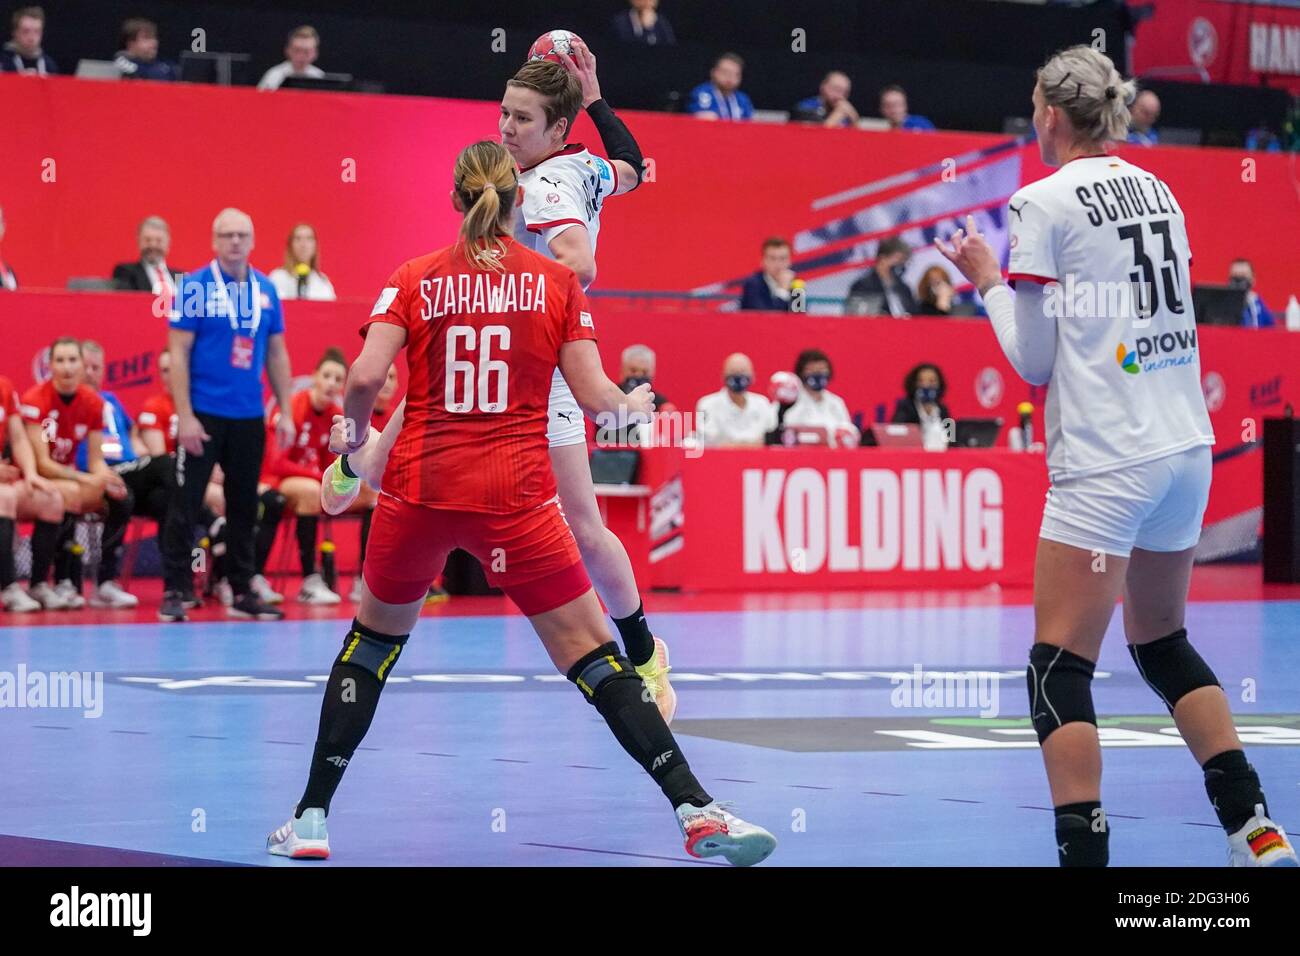 KOLDING, DANEMARK - DÉCEMBRE 7 : Joanna Szarawaga, de Pologne, Meijke Schmelzer, d'Allemagne, lors du match EHF Euro 2020 entre l'Allemagne et Polan Banque D'Images